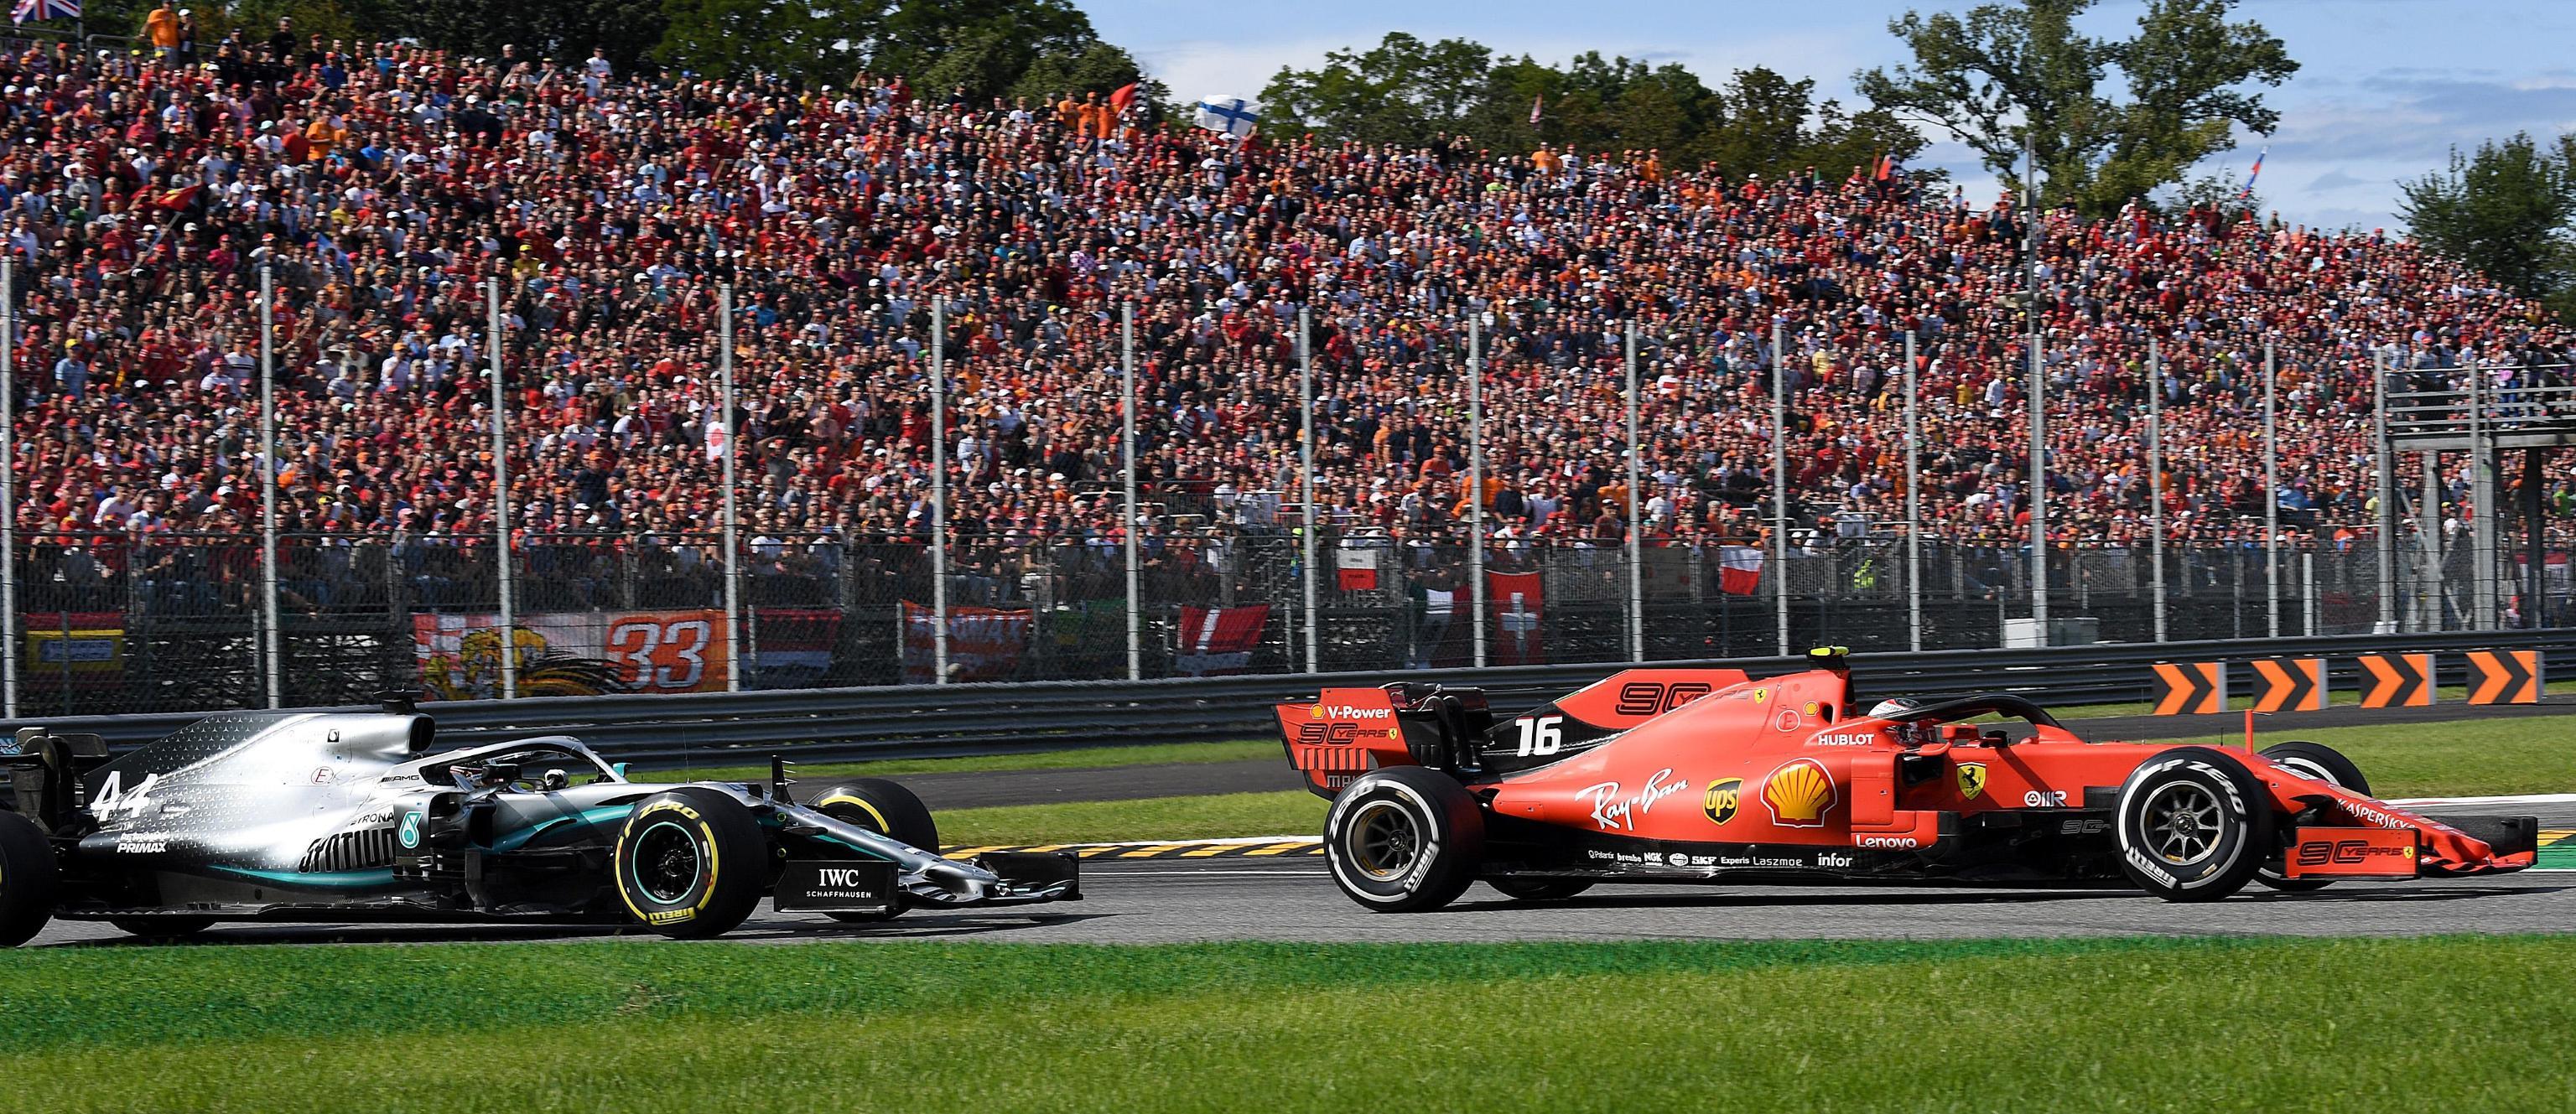 Il pilota della Ferrari ha dominato la gara: seguito da Hamilton, Charles Leclerc è sempre stato in prima posizione dall'inizio alla fine